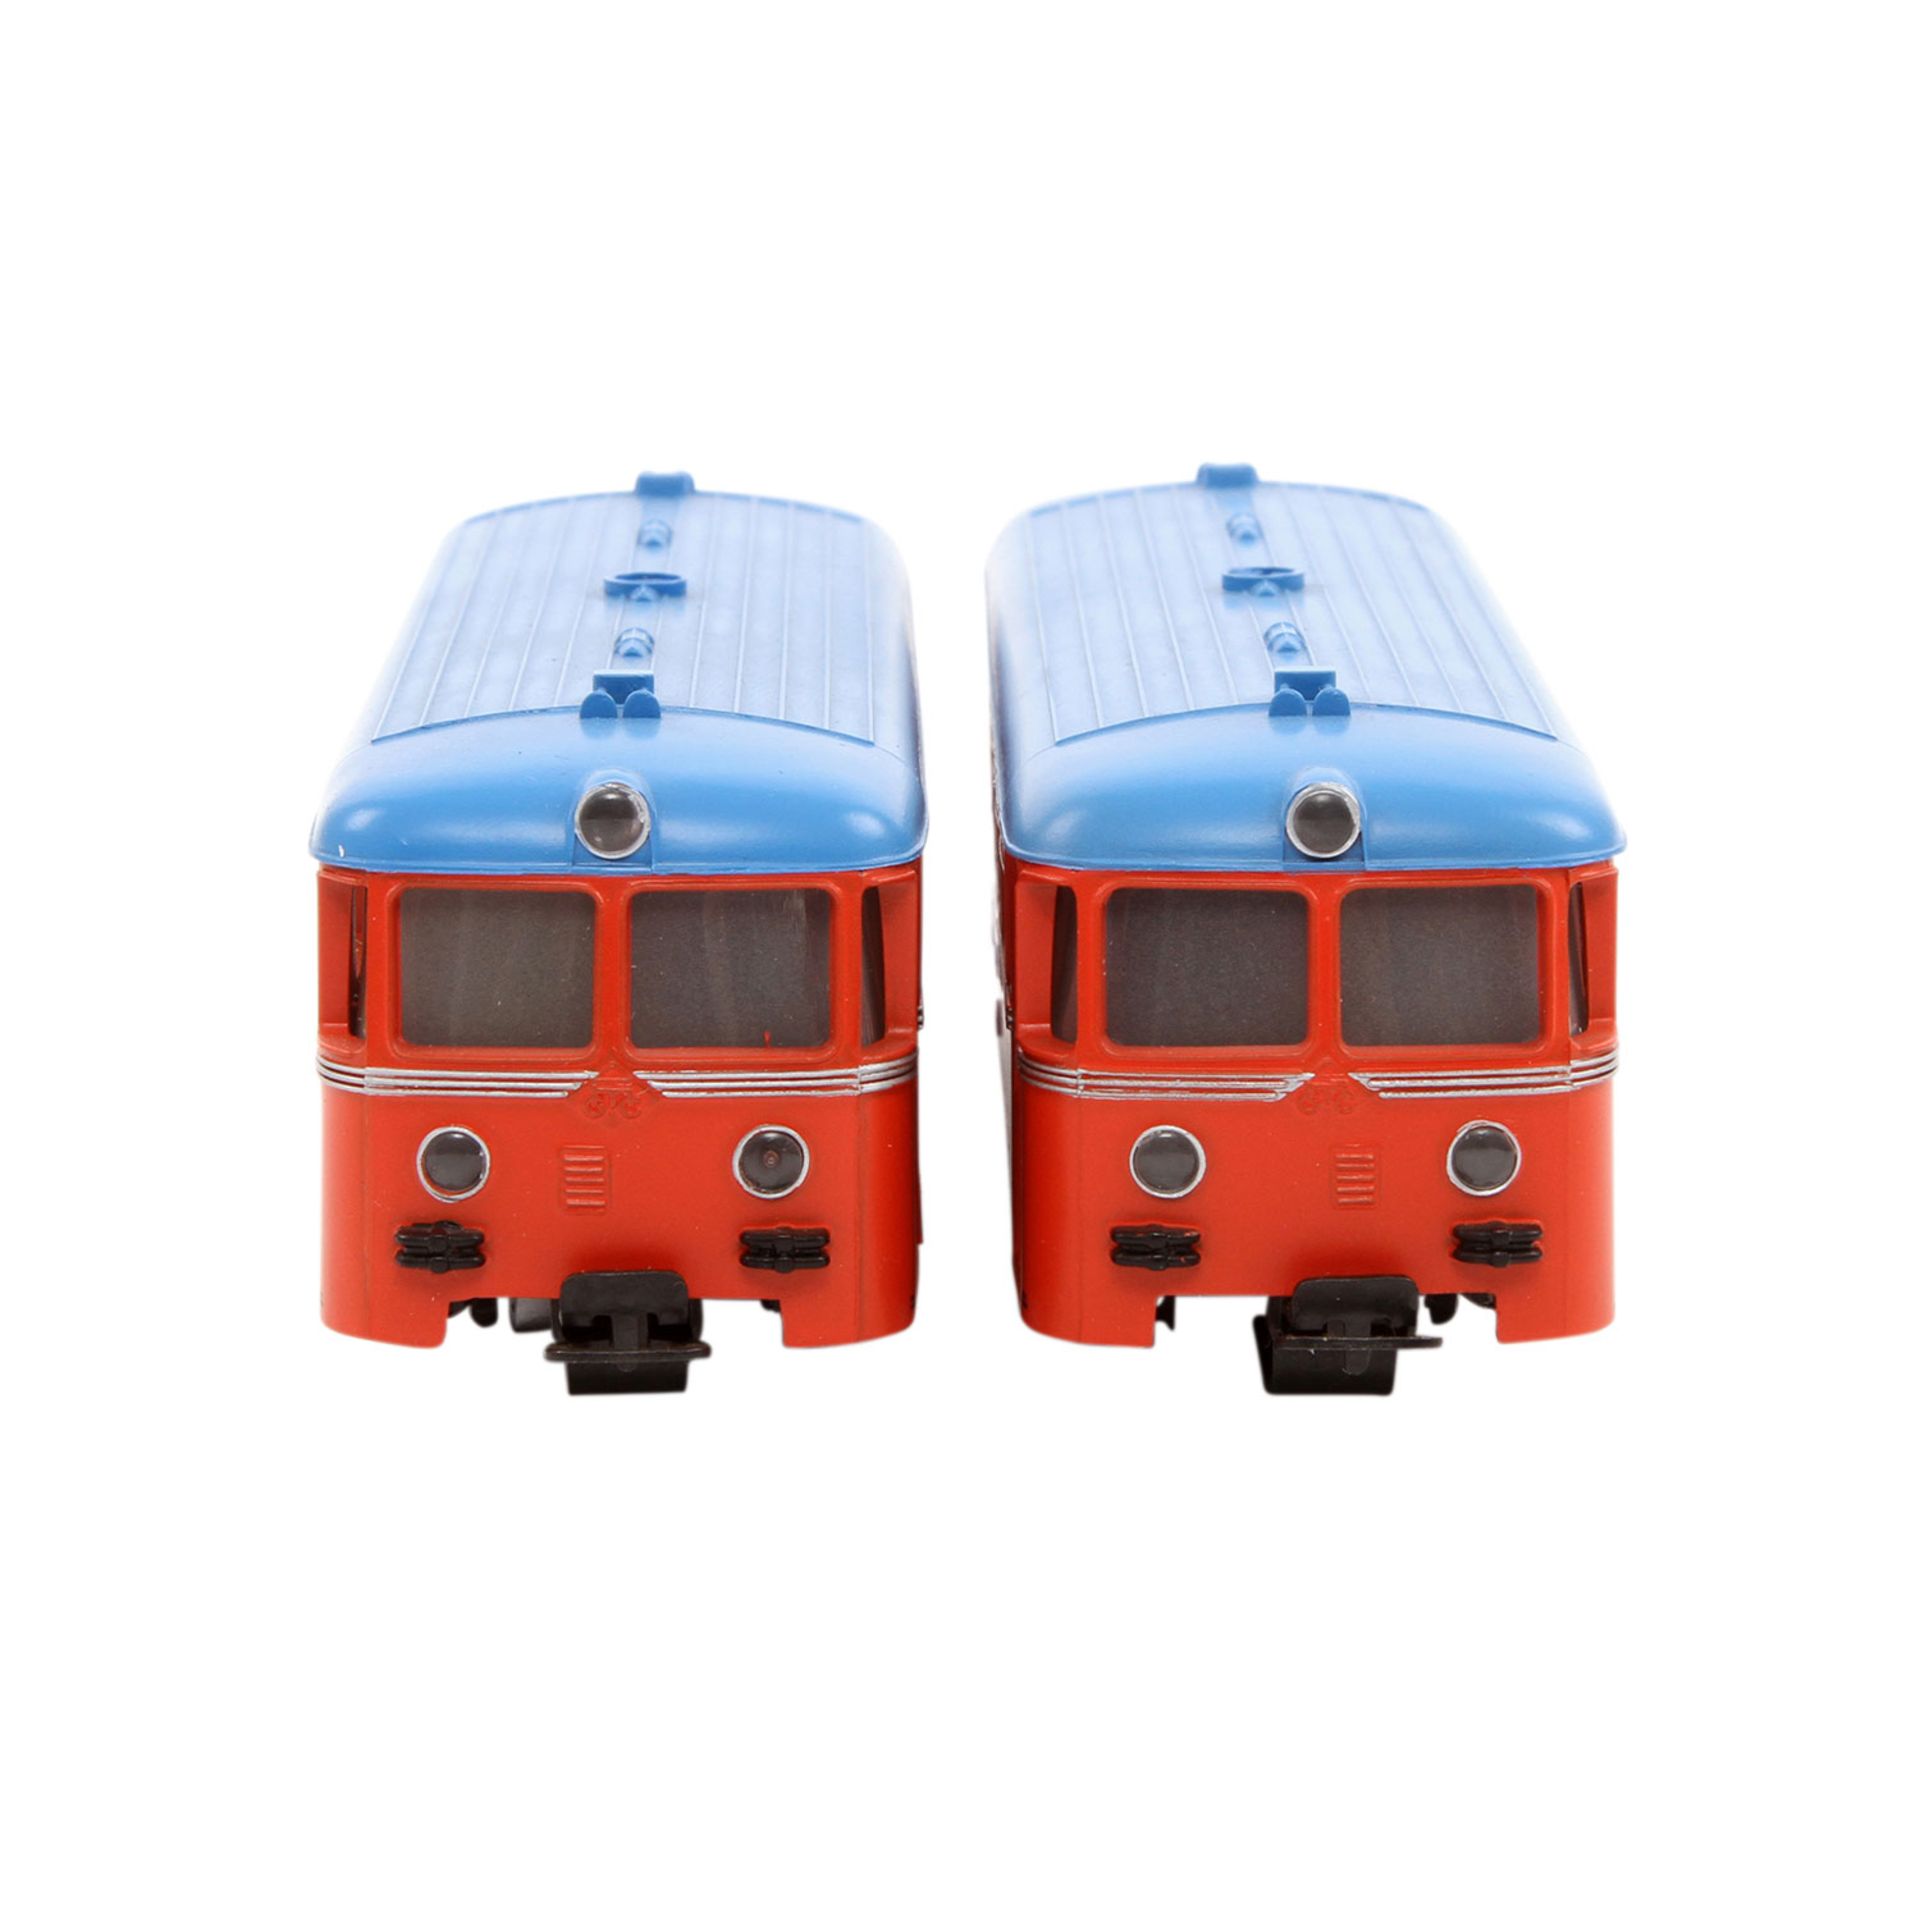 MÄRKLIN Schienenbus mit Beiwagen 3140, Spur H0, Kunststoff-Gehäuse, rot m. blauem Dach, VT 21 und VS - Bild 2 aus 8